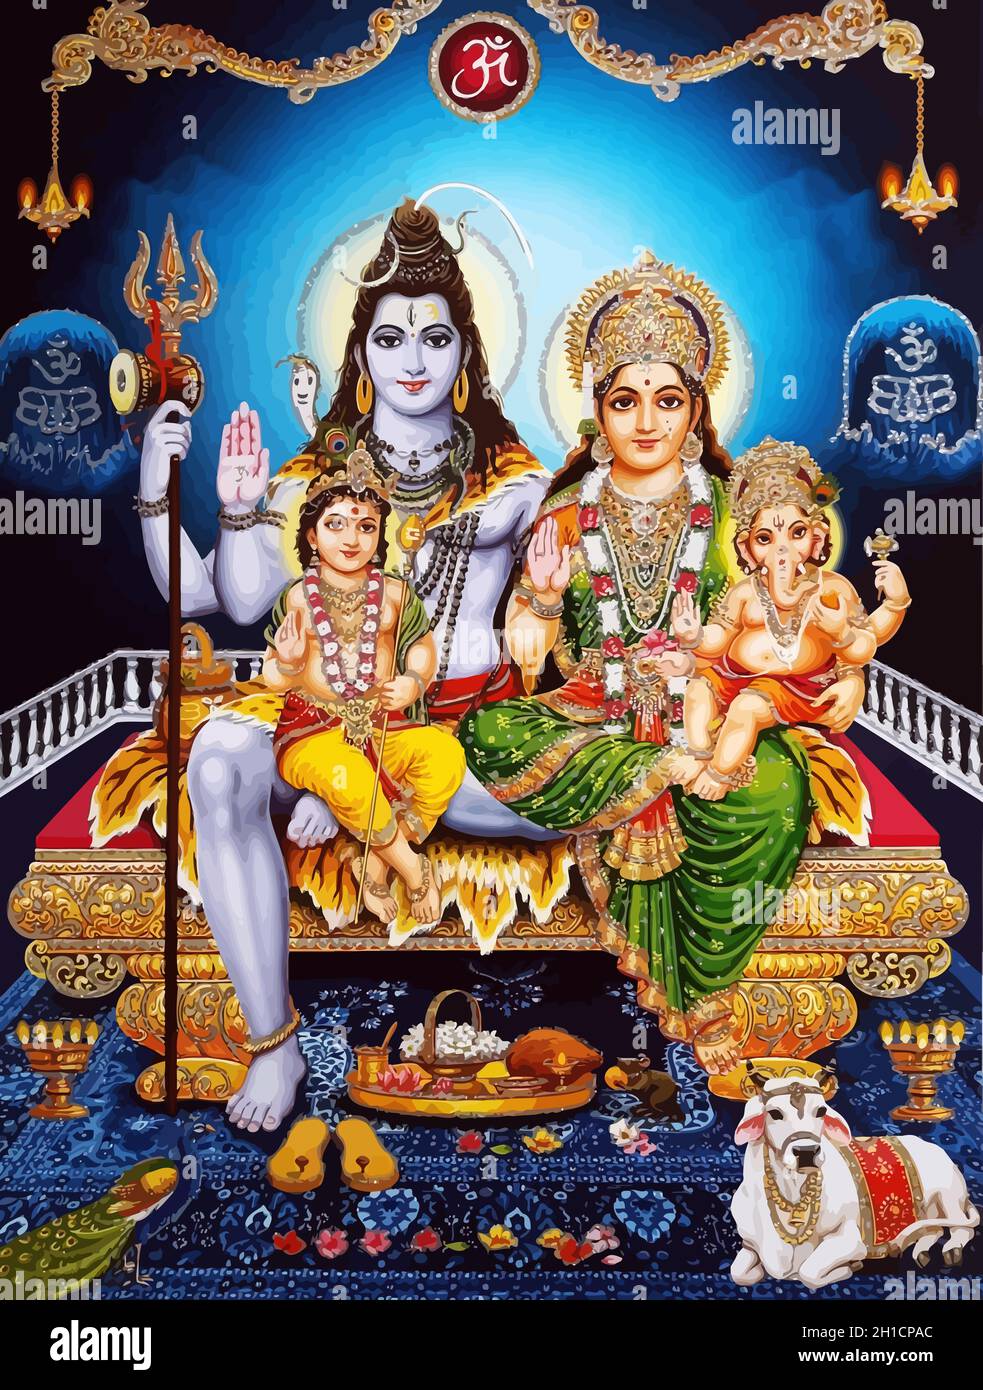 ganesha baby hinduism lord shiva spiritual Saraswati holy power ox ...